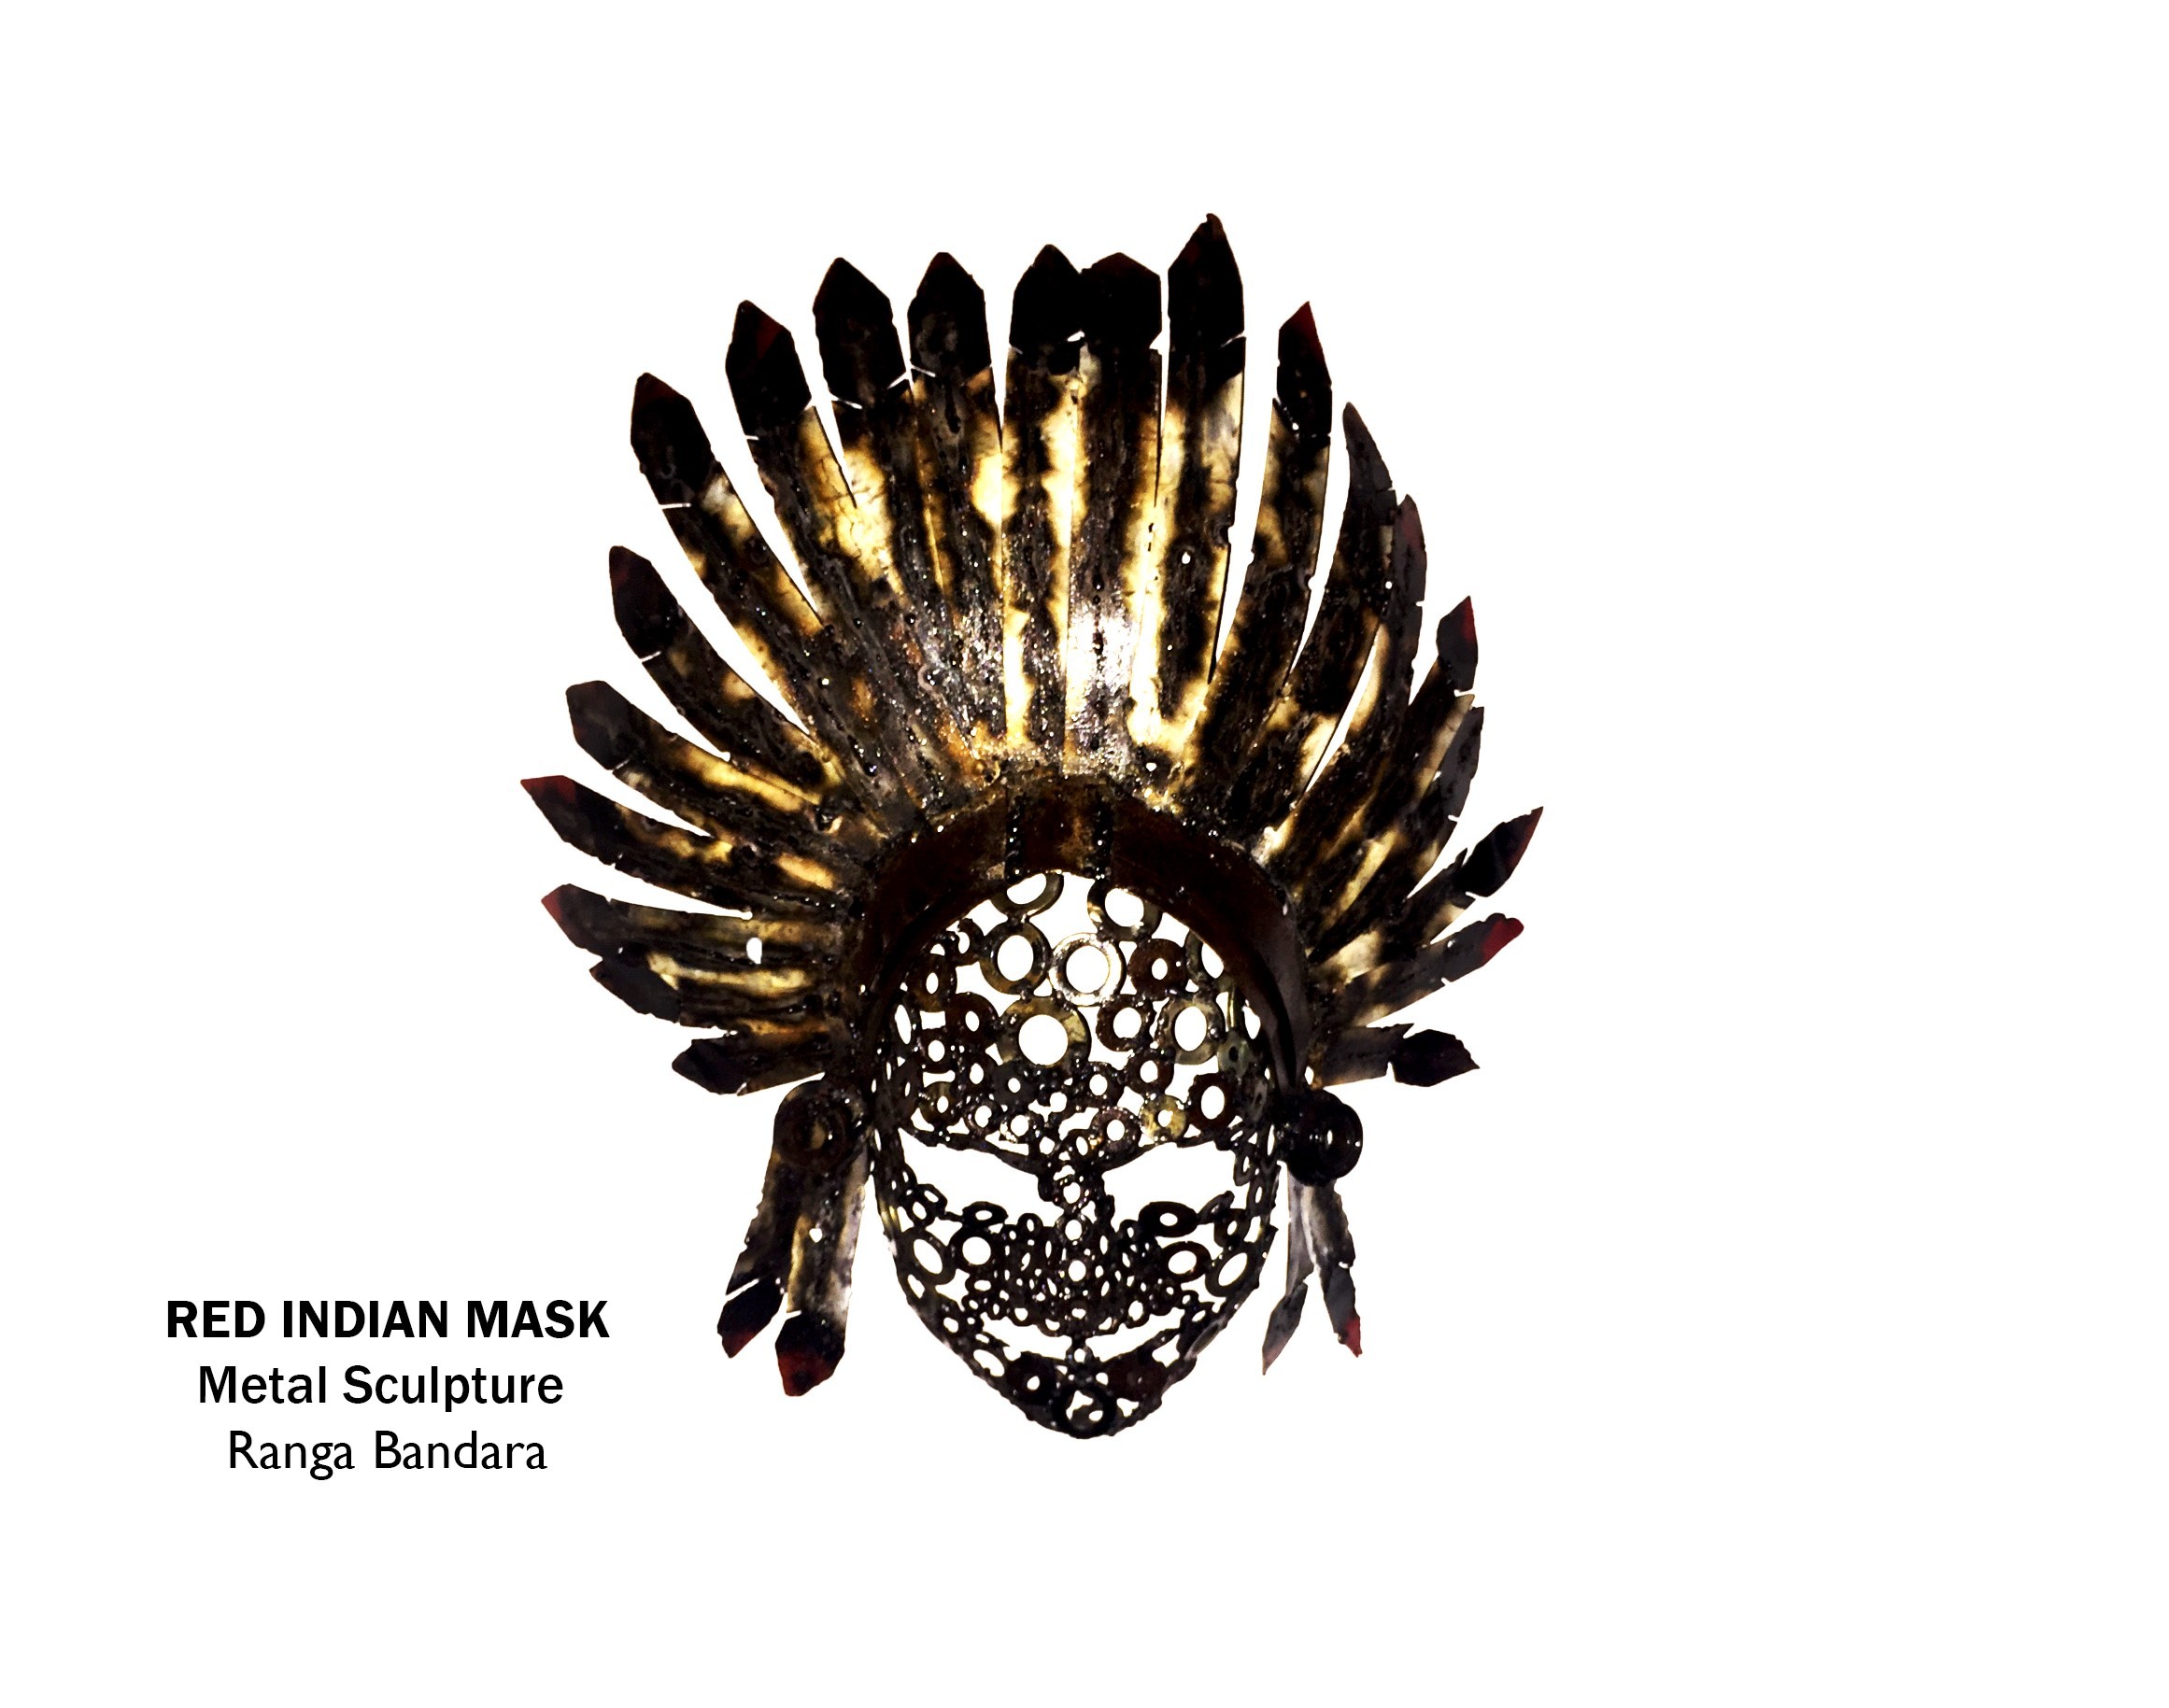 Red Indian mask by RANGA BANDARA